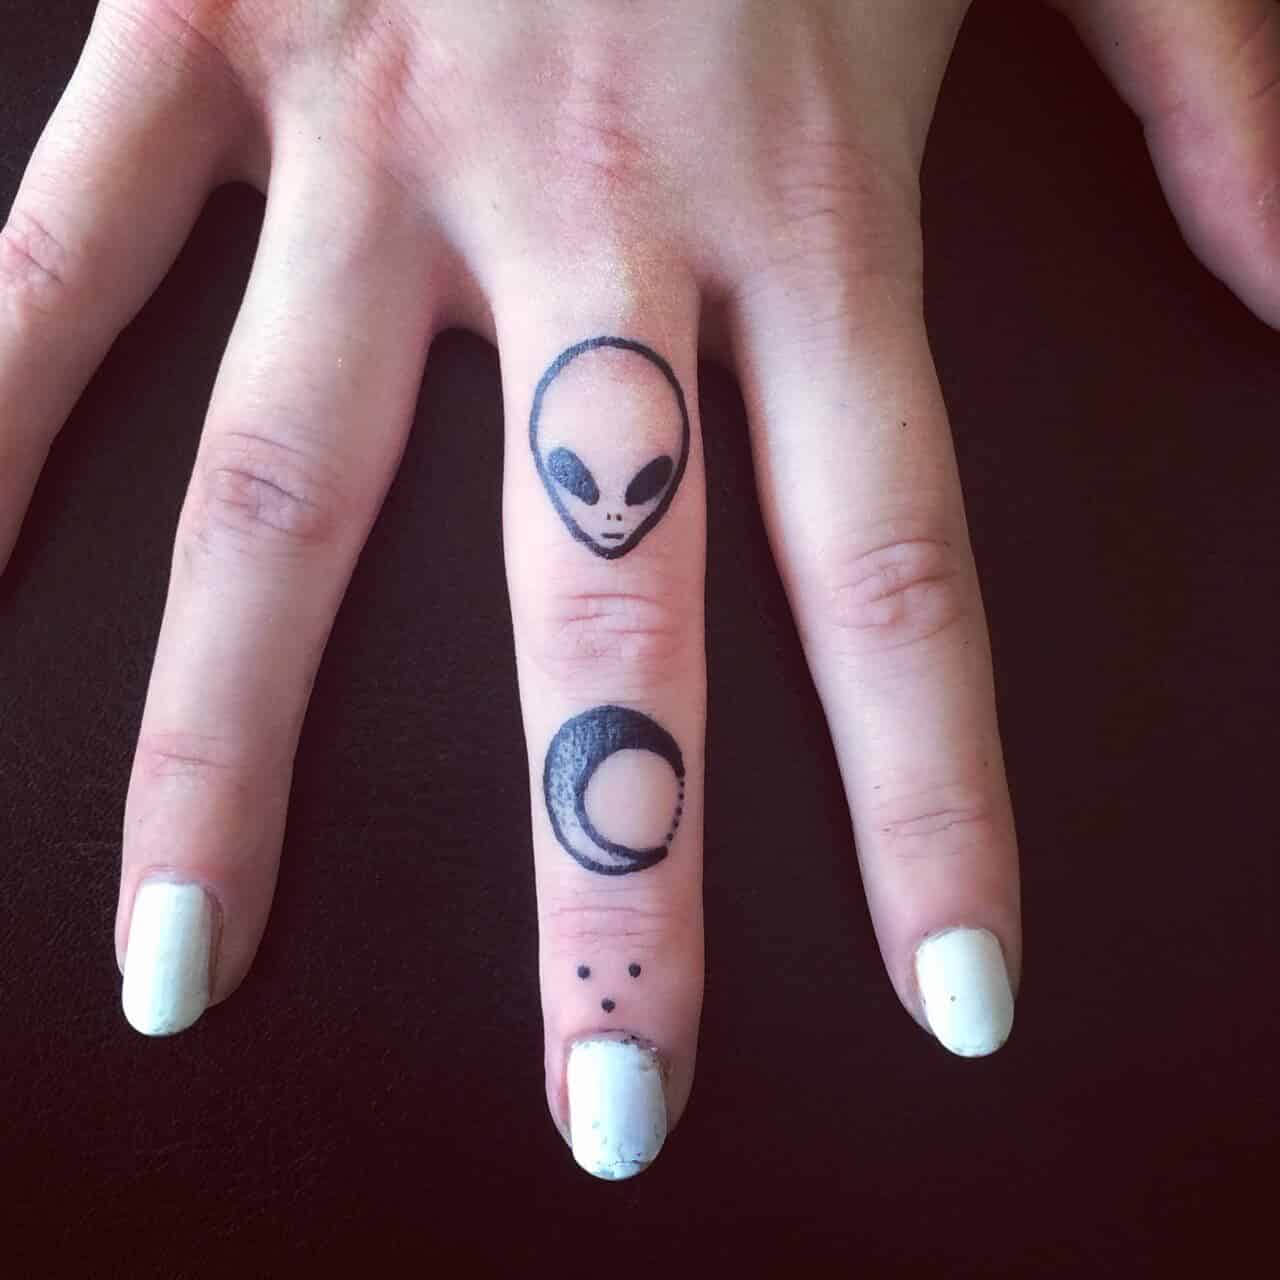 Middle finger alien head tattoo